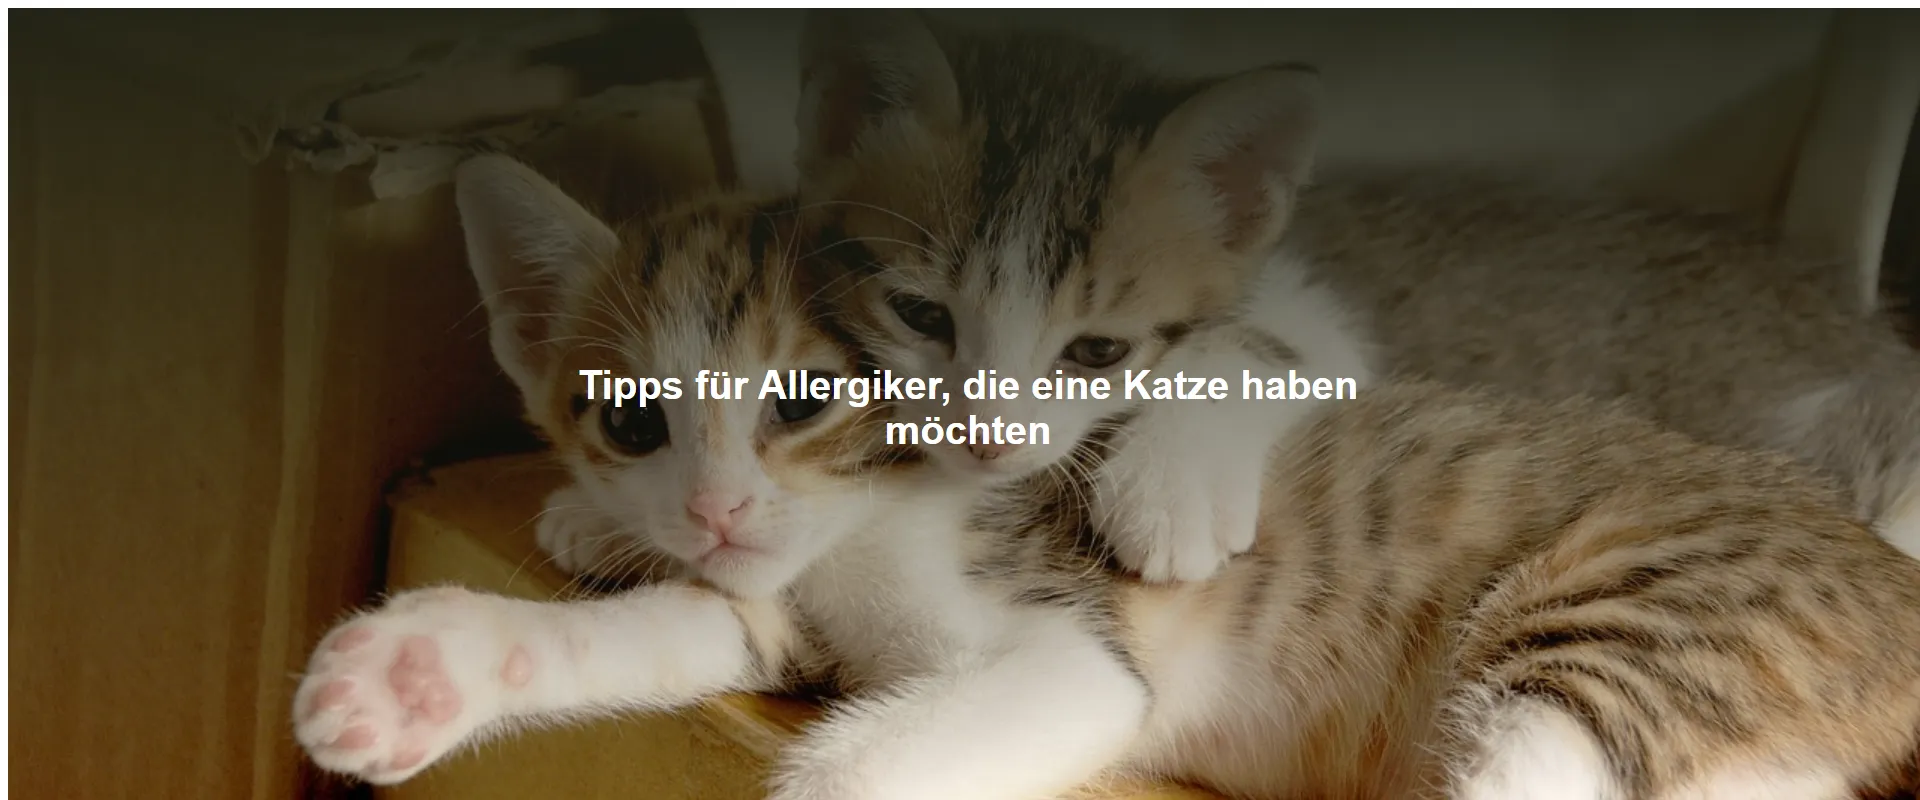 Tipps für Allergiker, die eine Katze haben möchten